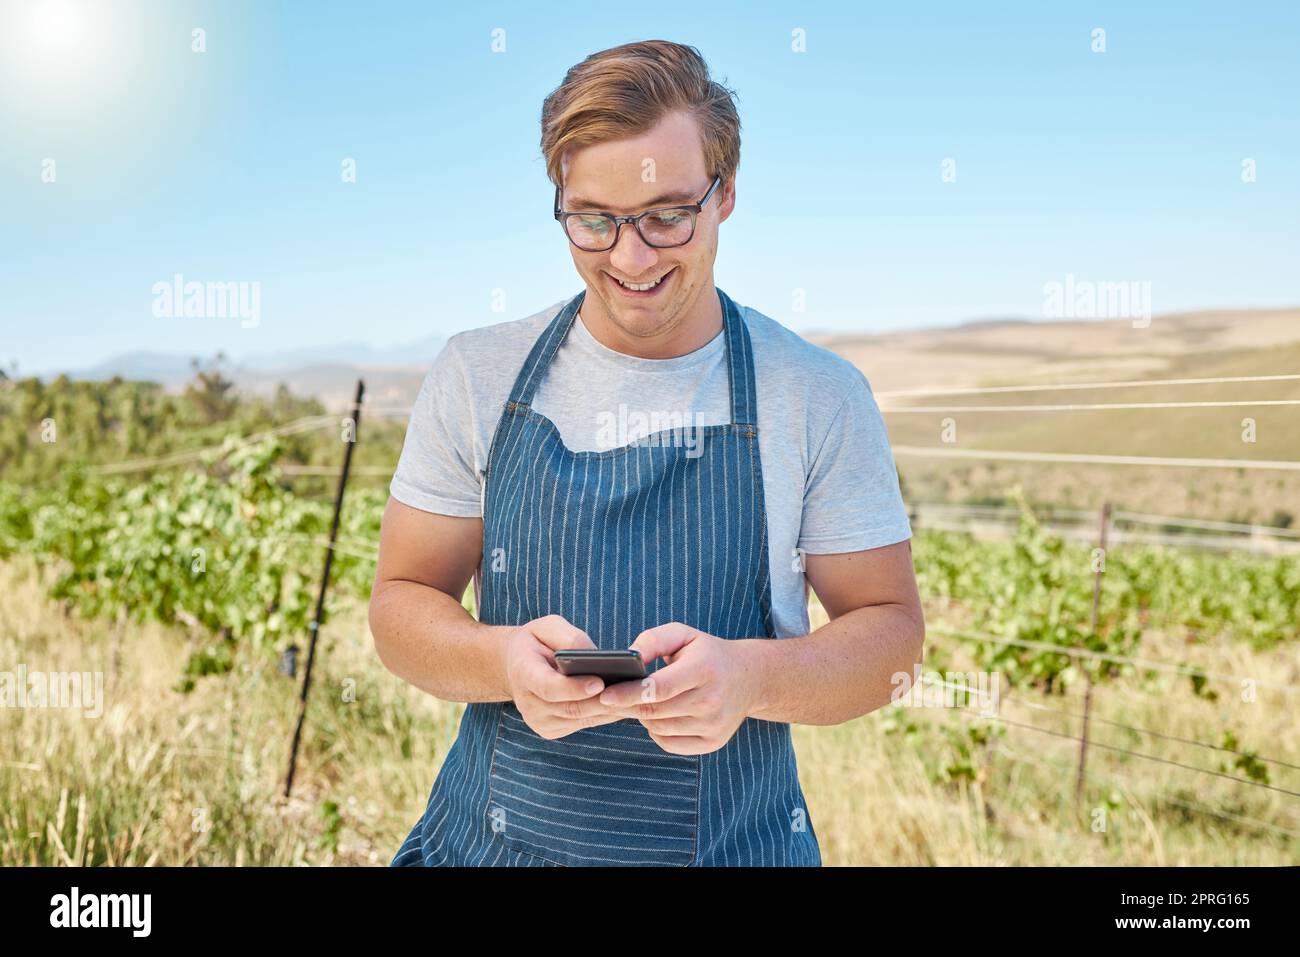 Telefon, Farm und Wein mit einem Bauern oder Winzer bekommt gute Nachrichten online in Vineyard. Nachhaltigkeit, Entwicklung und E-Commerce in der Landwirtschaft. Führend in der Alkohol-, Agrar- und verarbeitenden Industrie Stockfoto